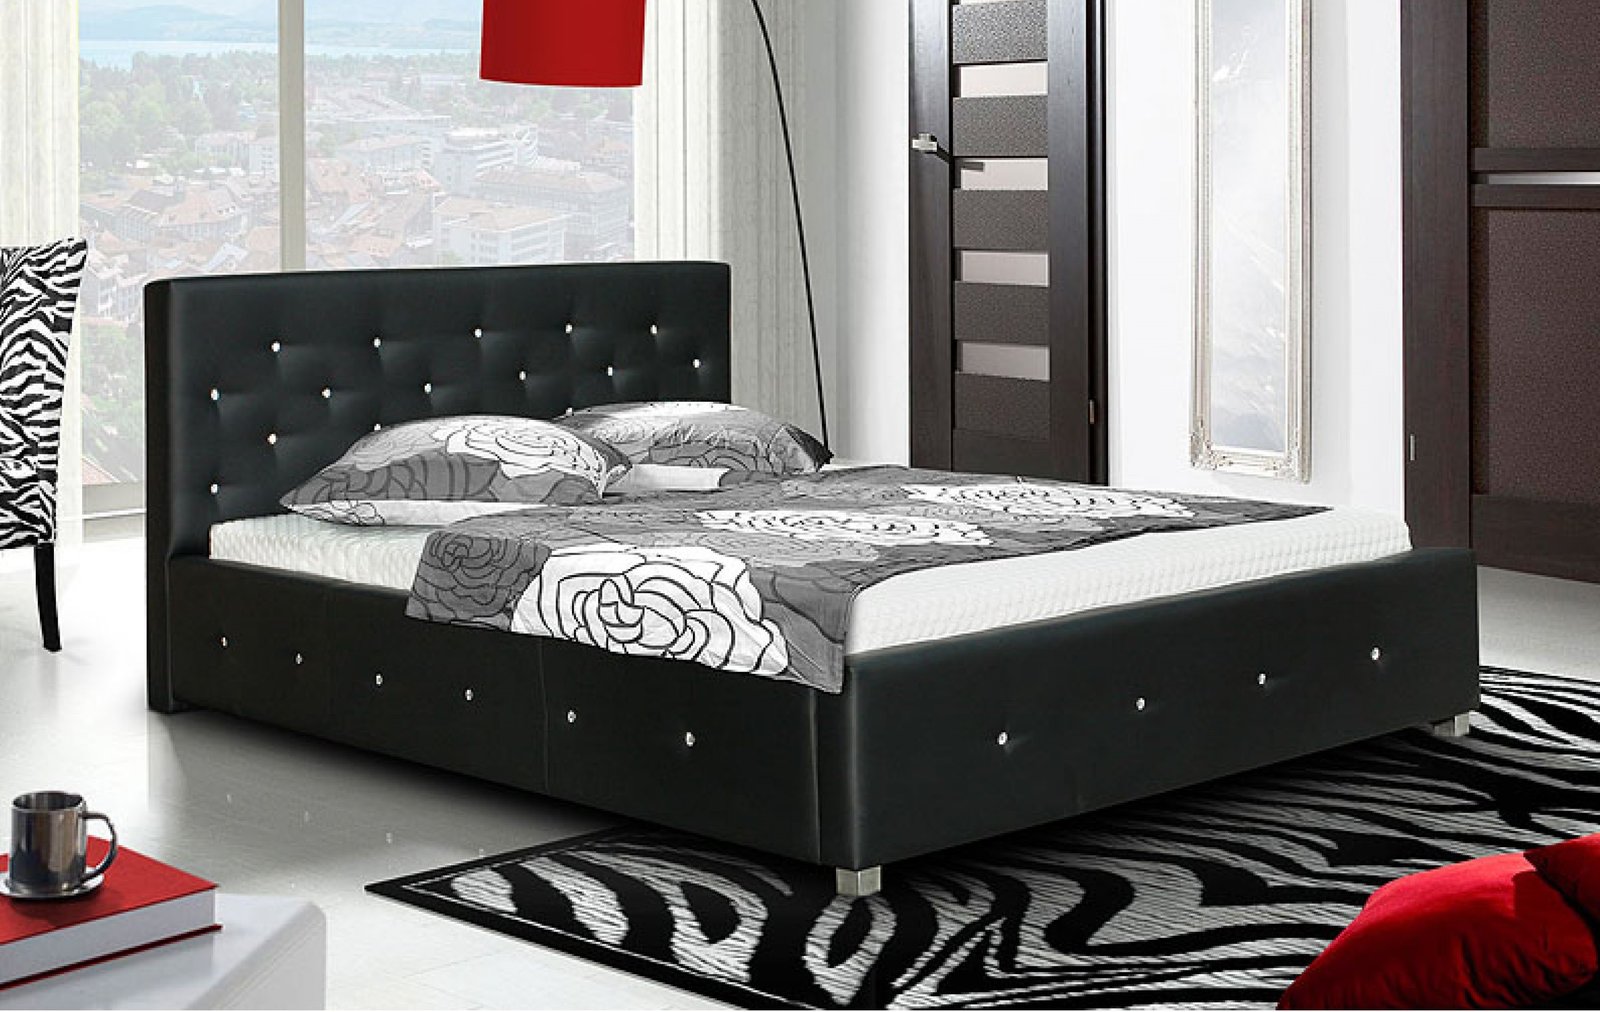 Manželská postel s úložným prostorem CS35009, 180x200 cm, černá ekokůže s krystalky Swarovski